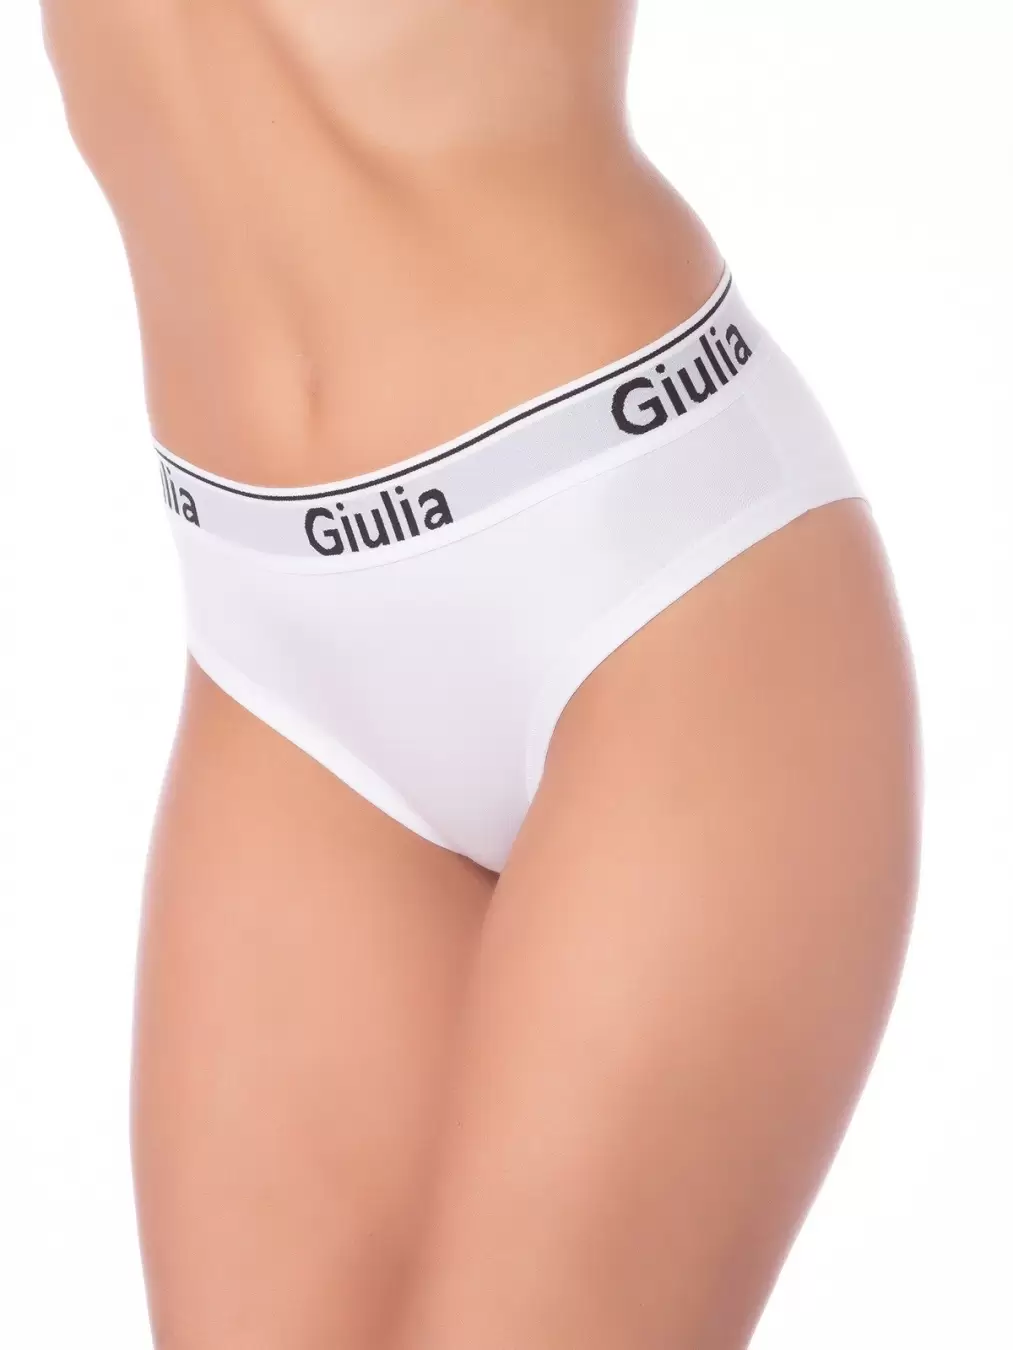 Giulia COTTON SLIP 01, трусы слипы (изображение 1)